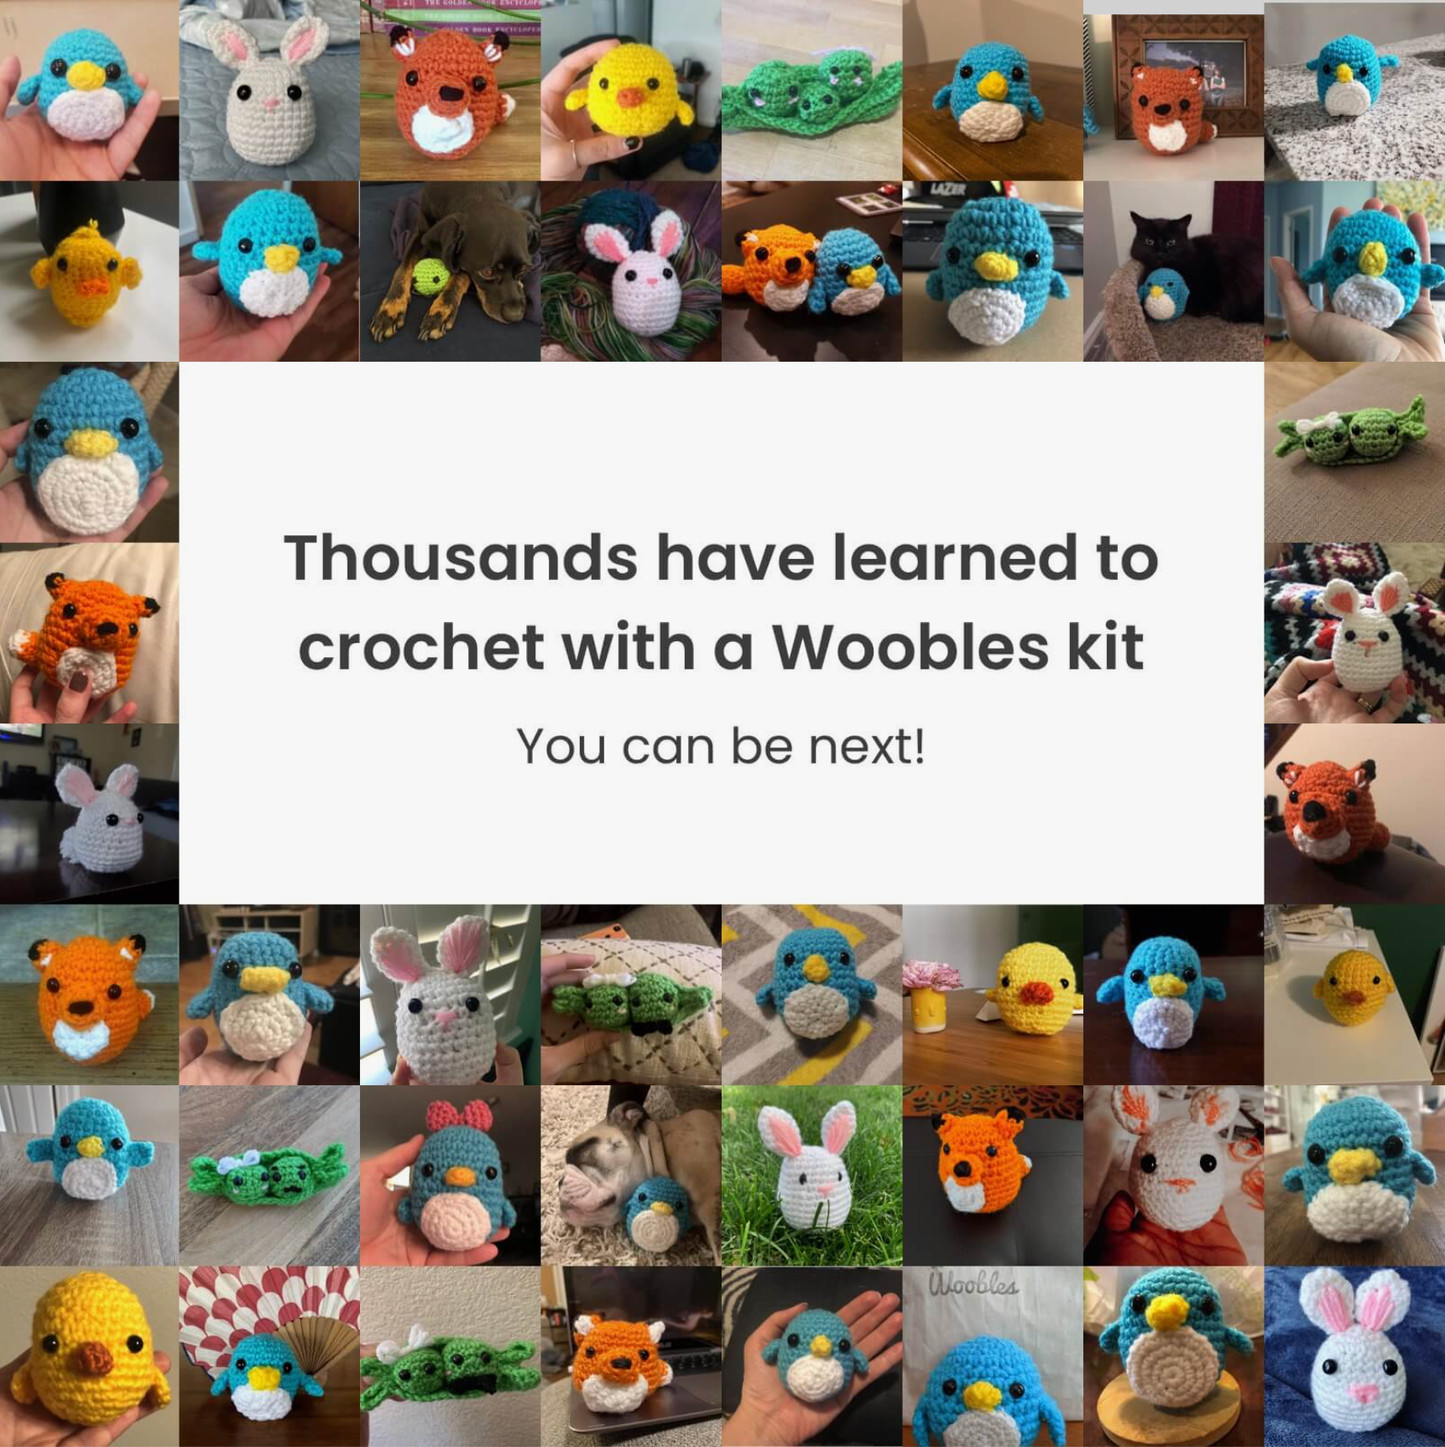 Fox Crochet Kit for Beginners